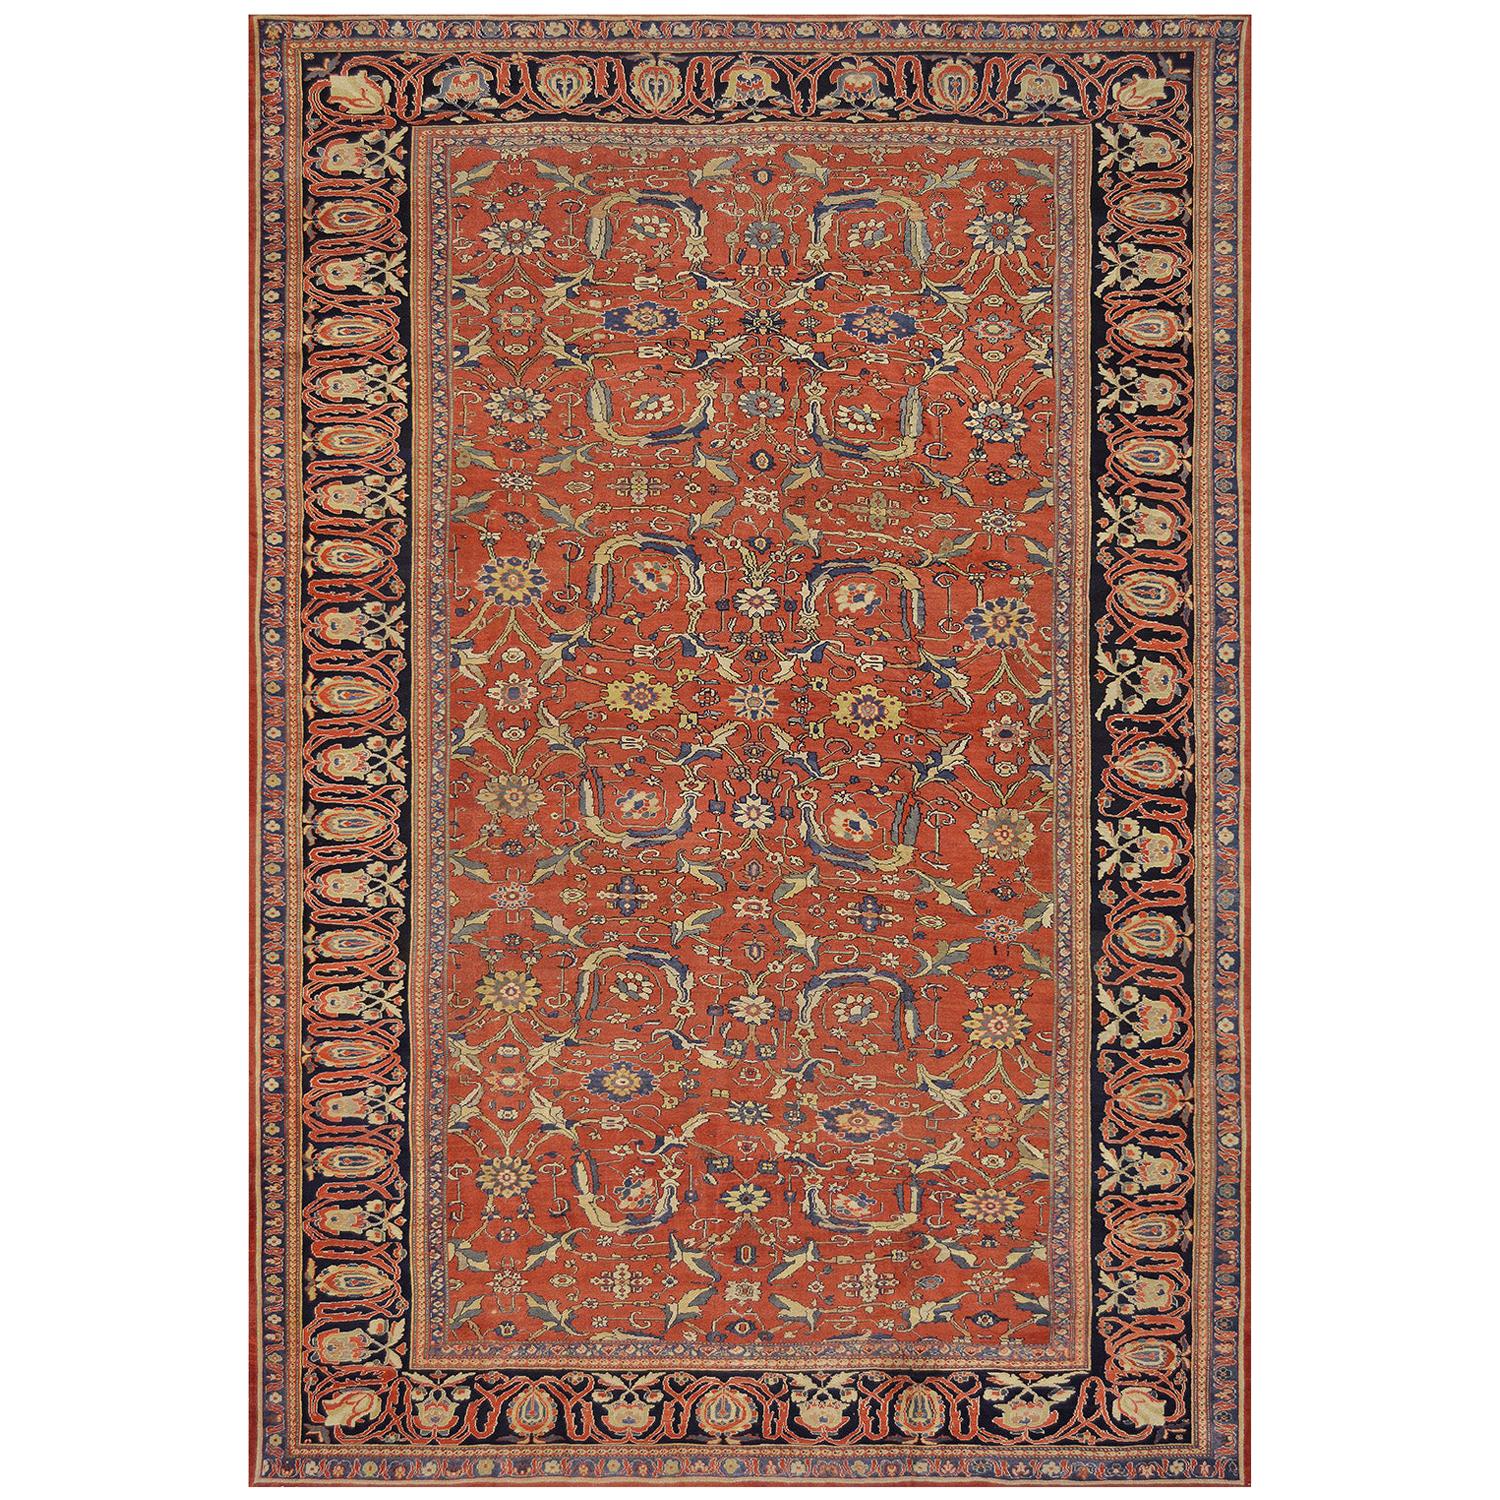 Fereghan-Teppich aus West Persien des späten 19. Jahrhunderts